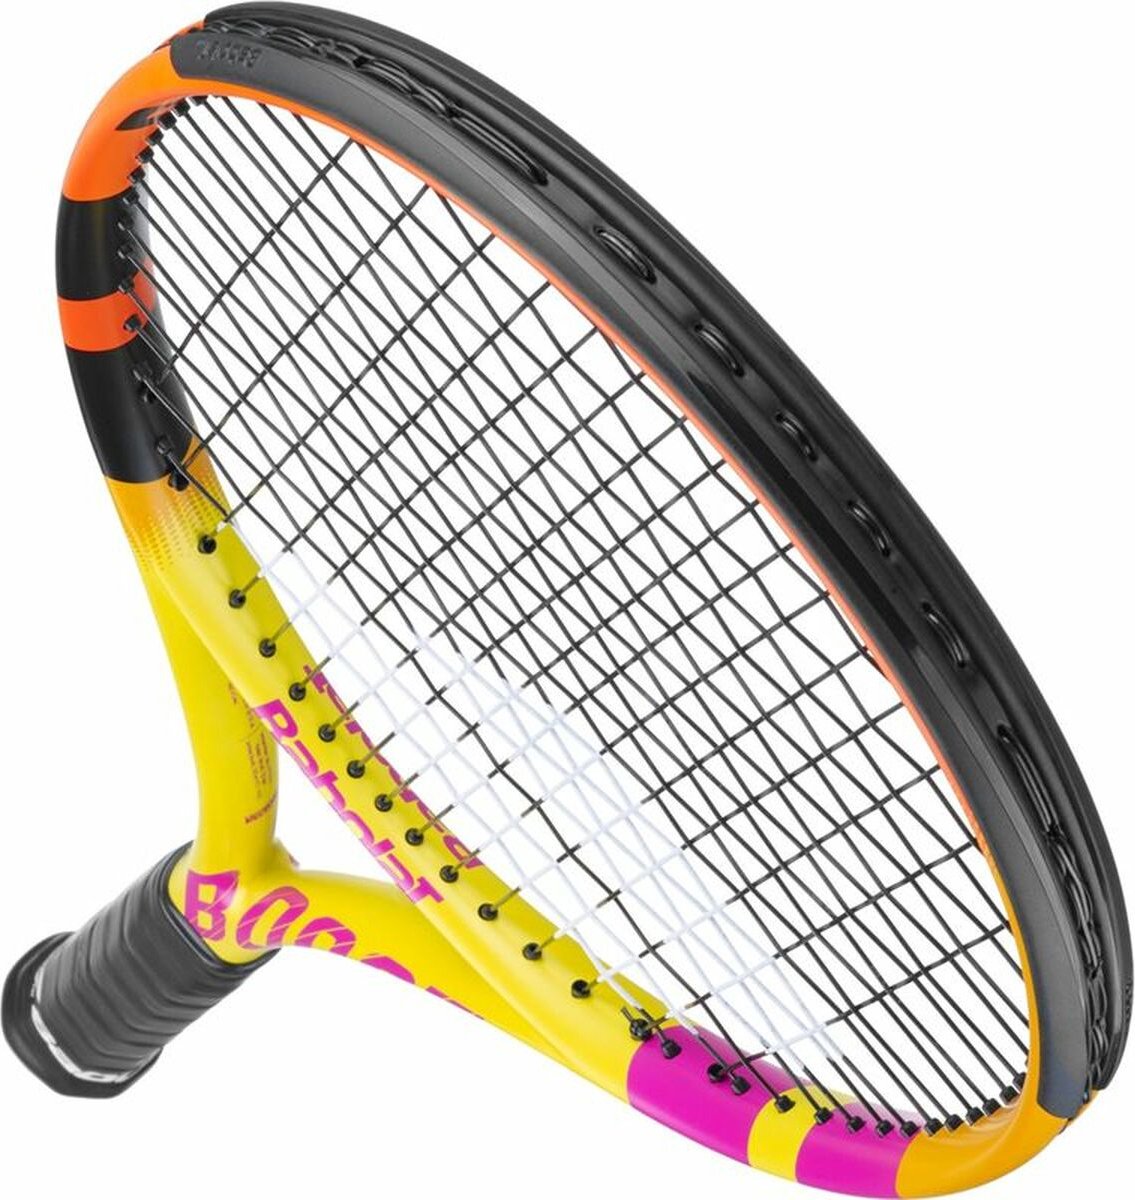 Raquette de badminton Prime 2k strung - Babolat UNI Orange